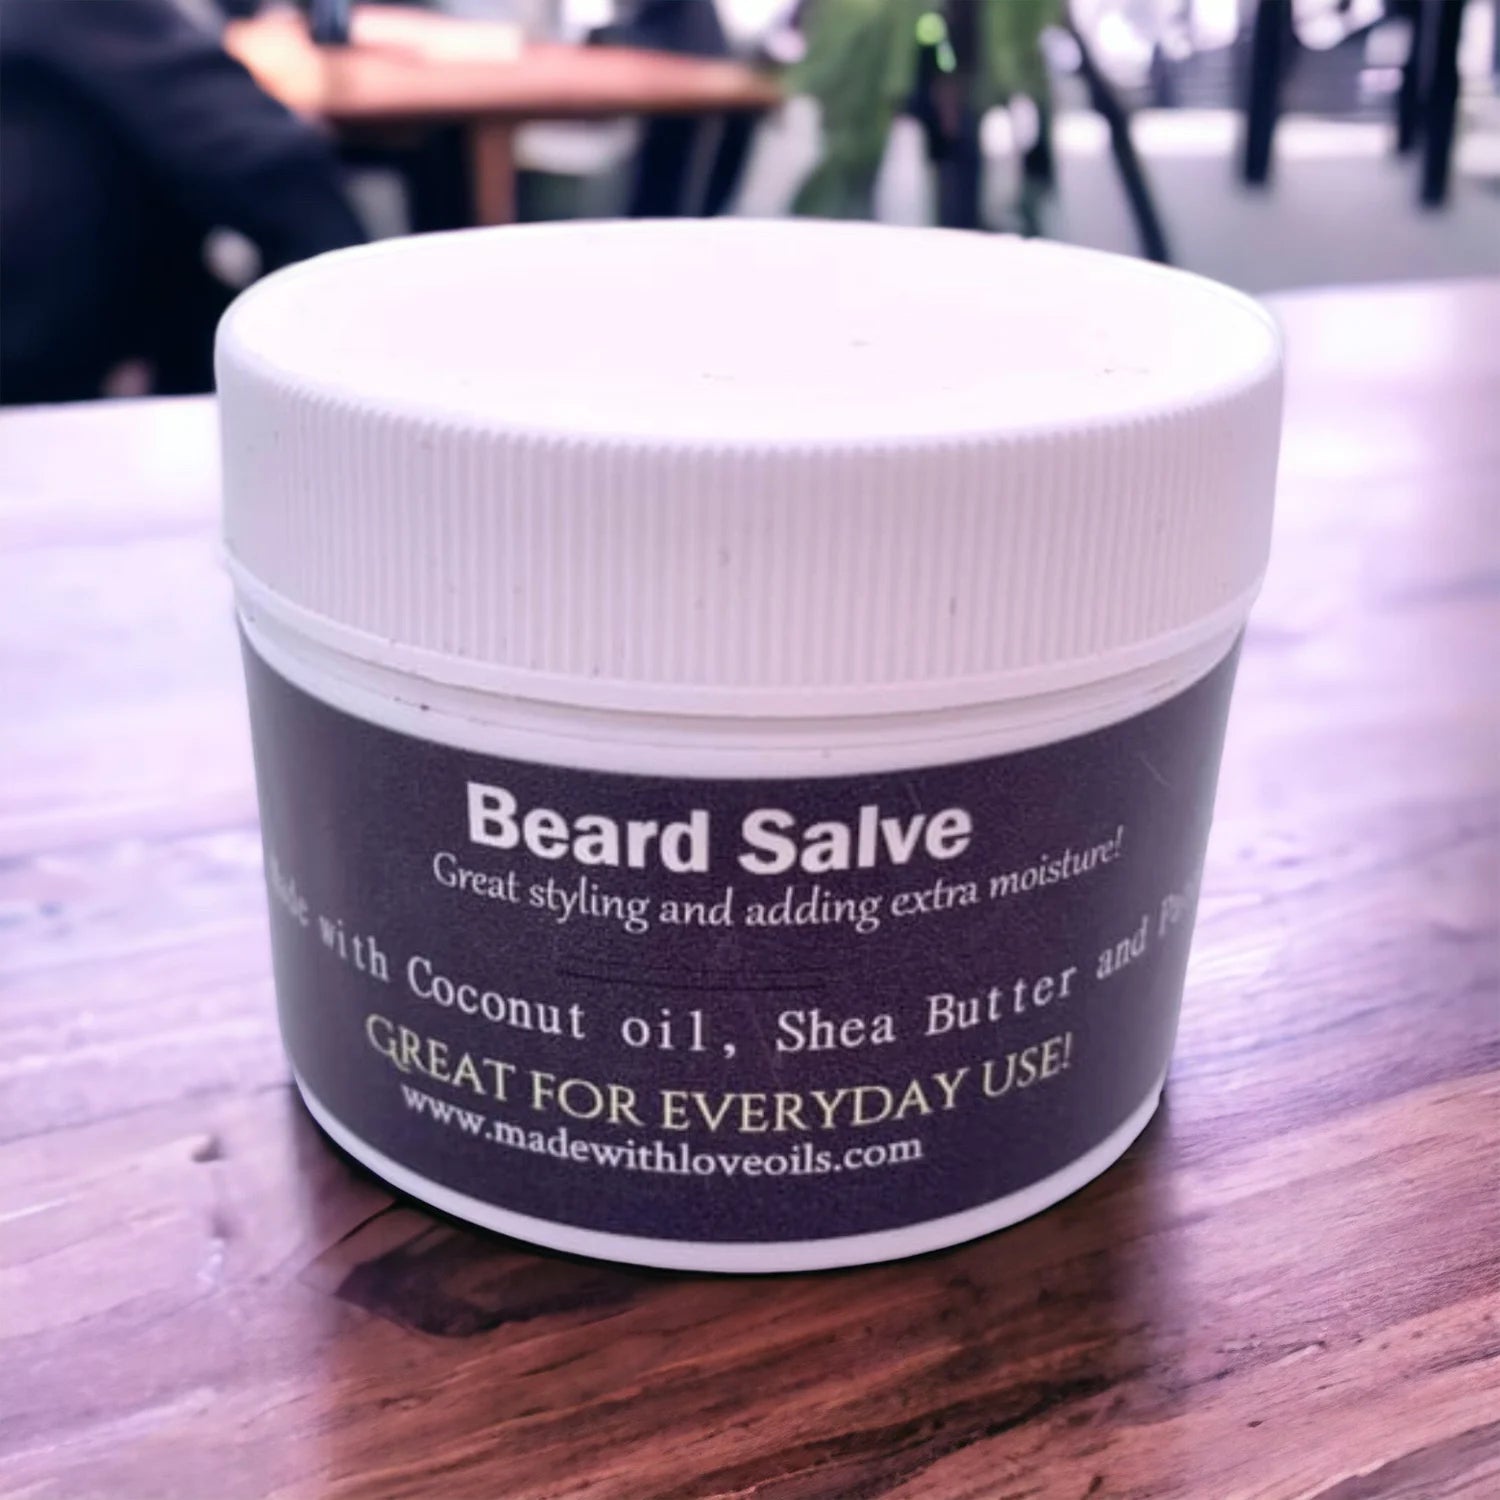 Beard Salve